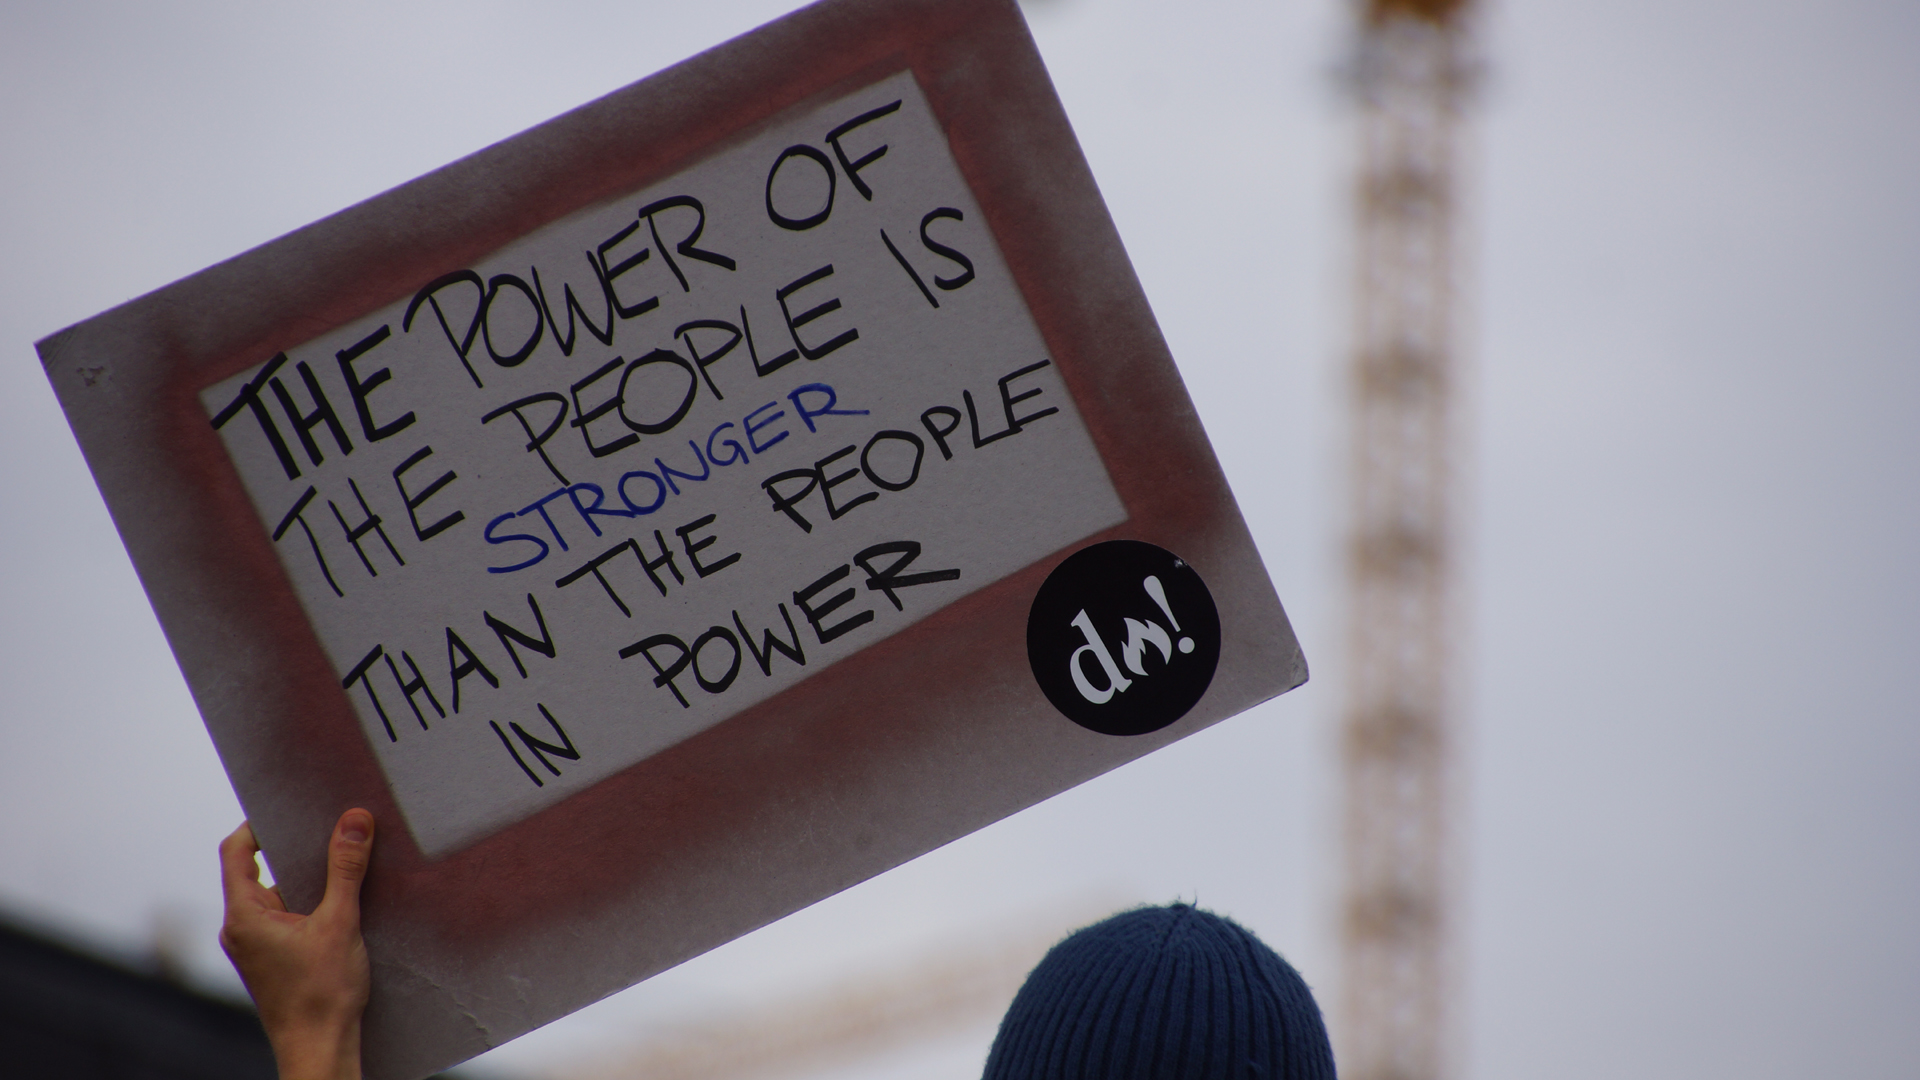 Fotostrecke Wir 55: die Macht des Volkes